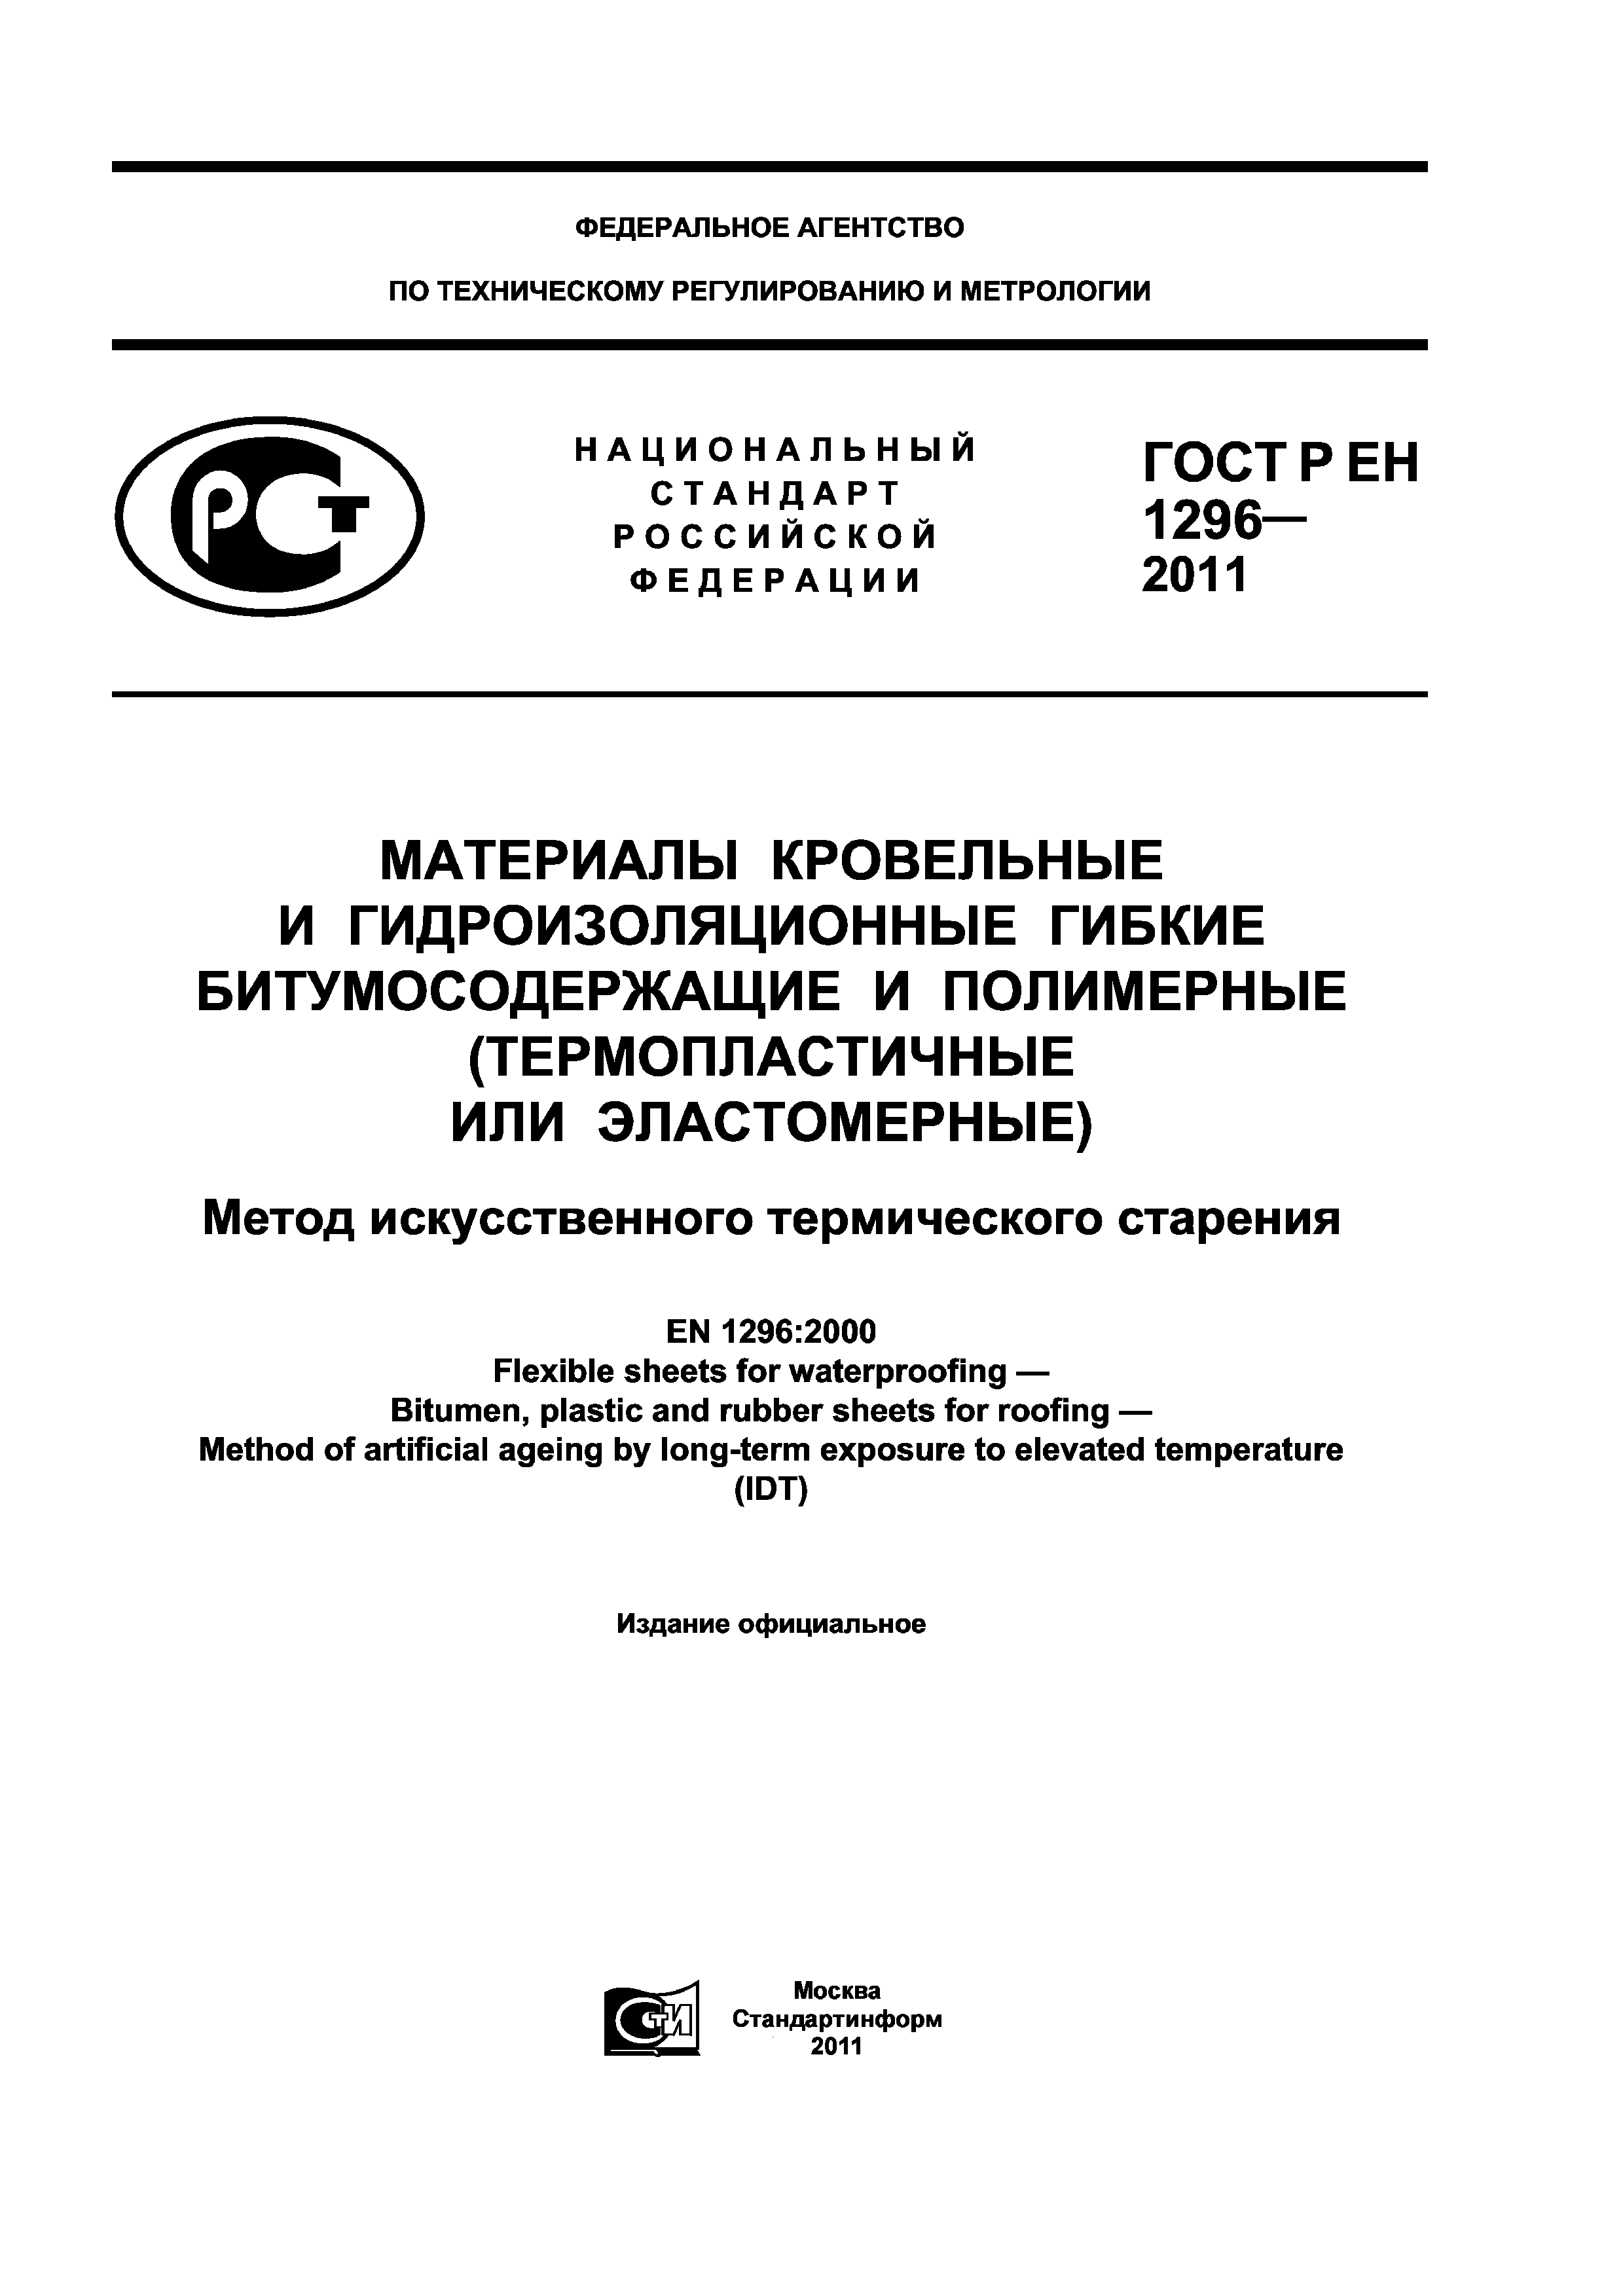 ГОСТ Р ЕН 1296-2011